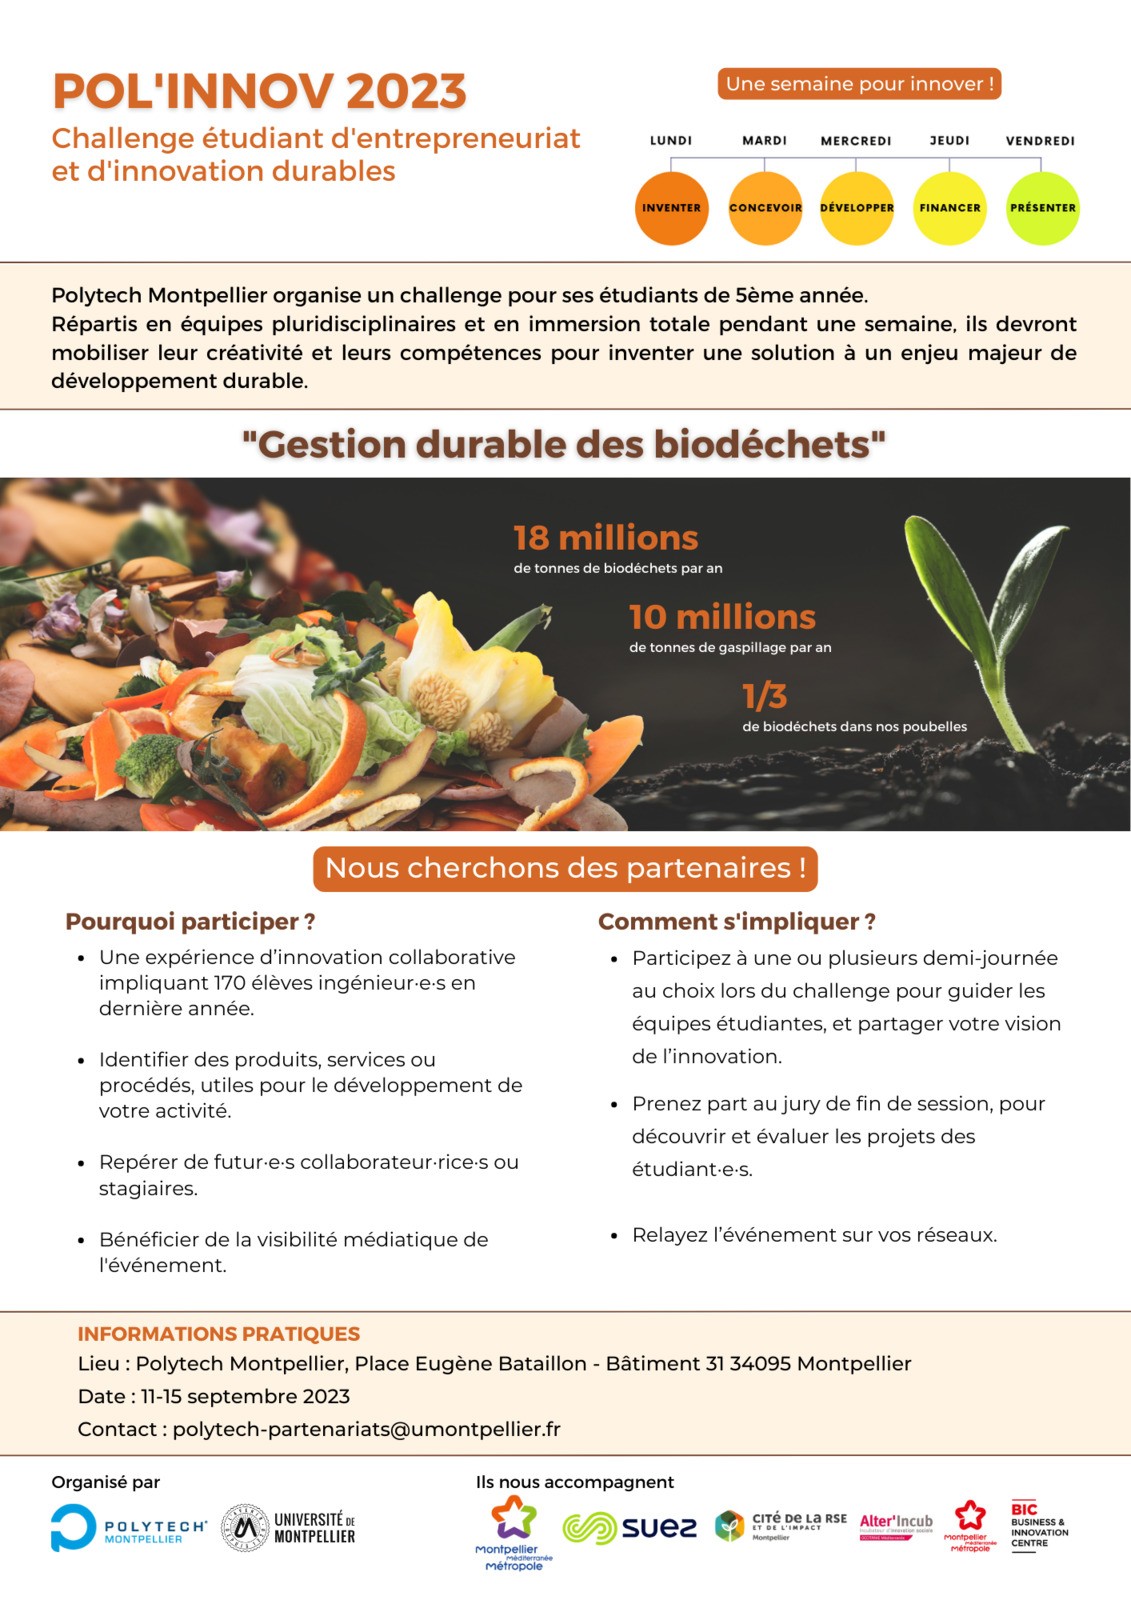 Gestion durable des biodéchets - Challenge étudiant d'entrepreneuriat et d'innovation durables - Polytech Montpellier - 11-15 septembre 2023 